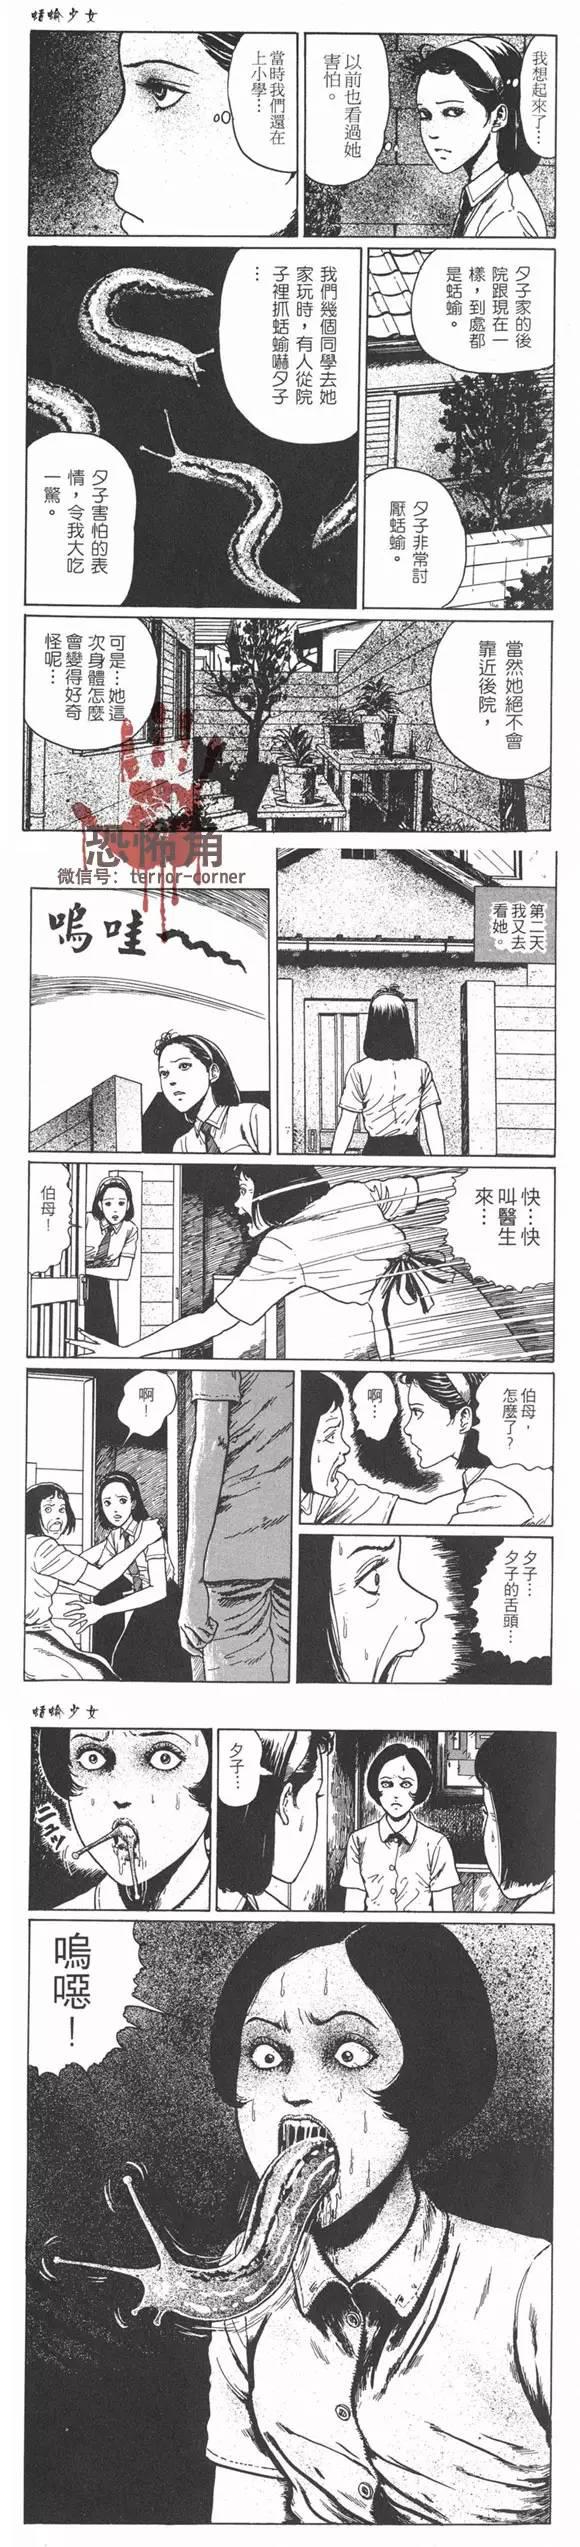 伊藤润二系列恐怖漫画《蛞蝓少女》篇图片